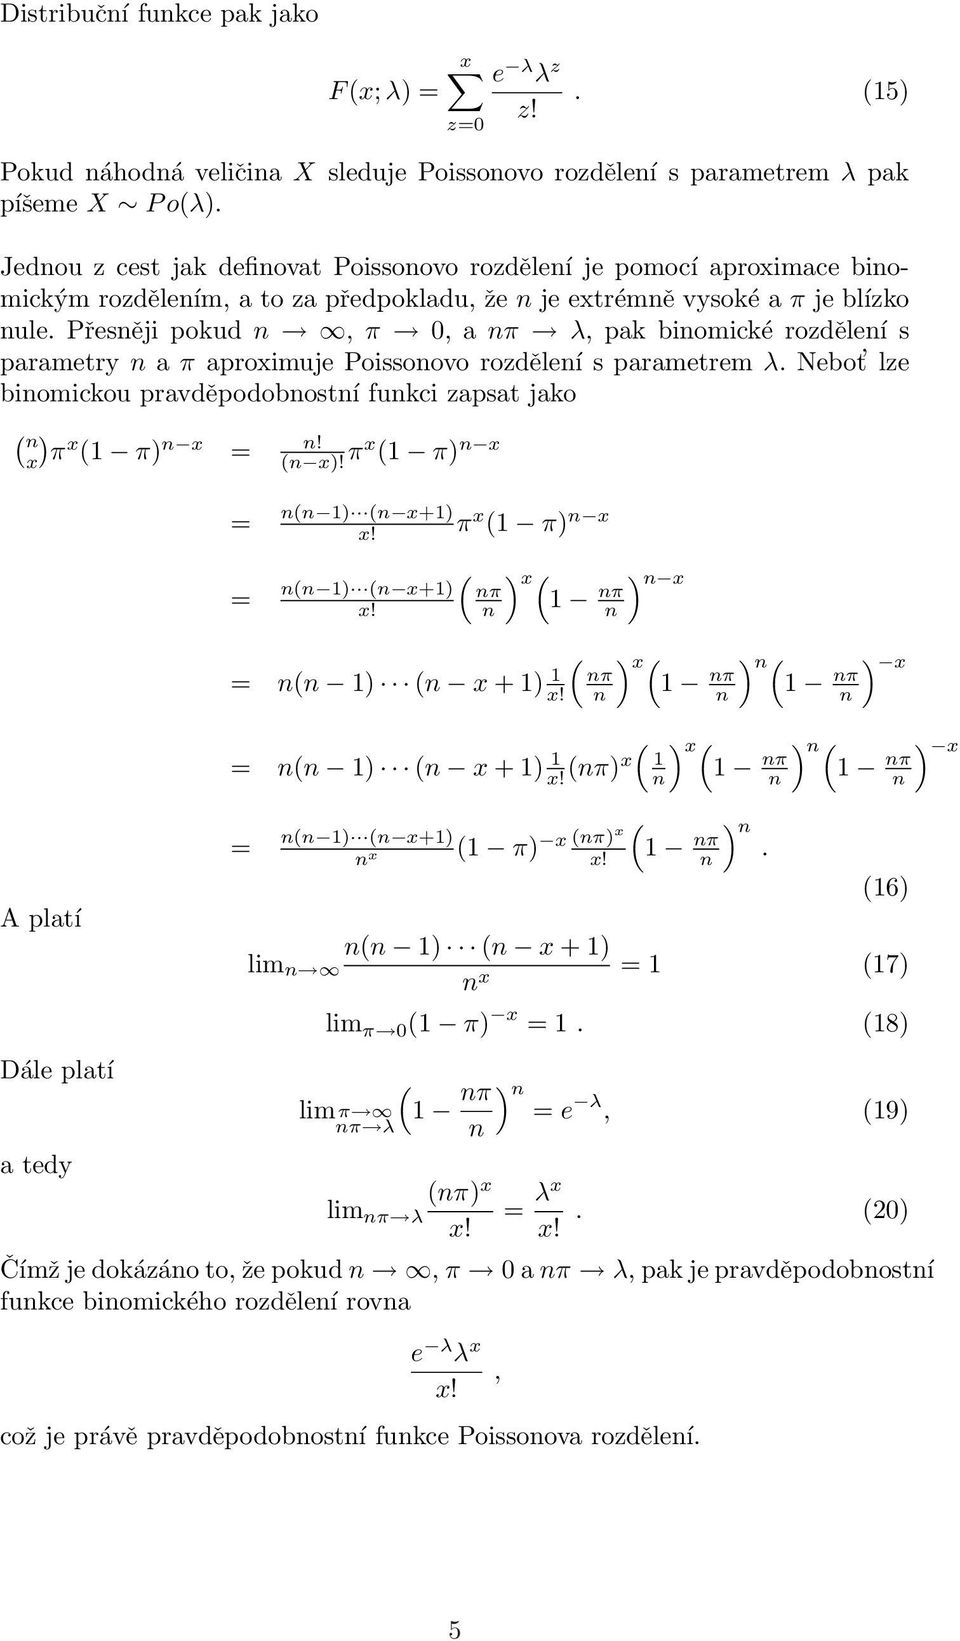 Přesěji pokud, π 0, a π λ, pak biomické rozděleí s parametry a π aproximuje Poissoovo rozděleí s parametrem λ. Nebot lze biomickou pravděpodobostí fukci zapsat jako ( x π x ( π x! = ( x!